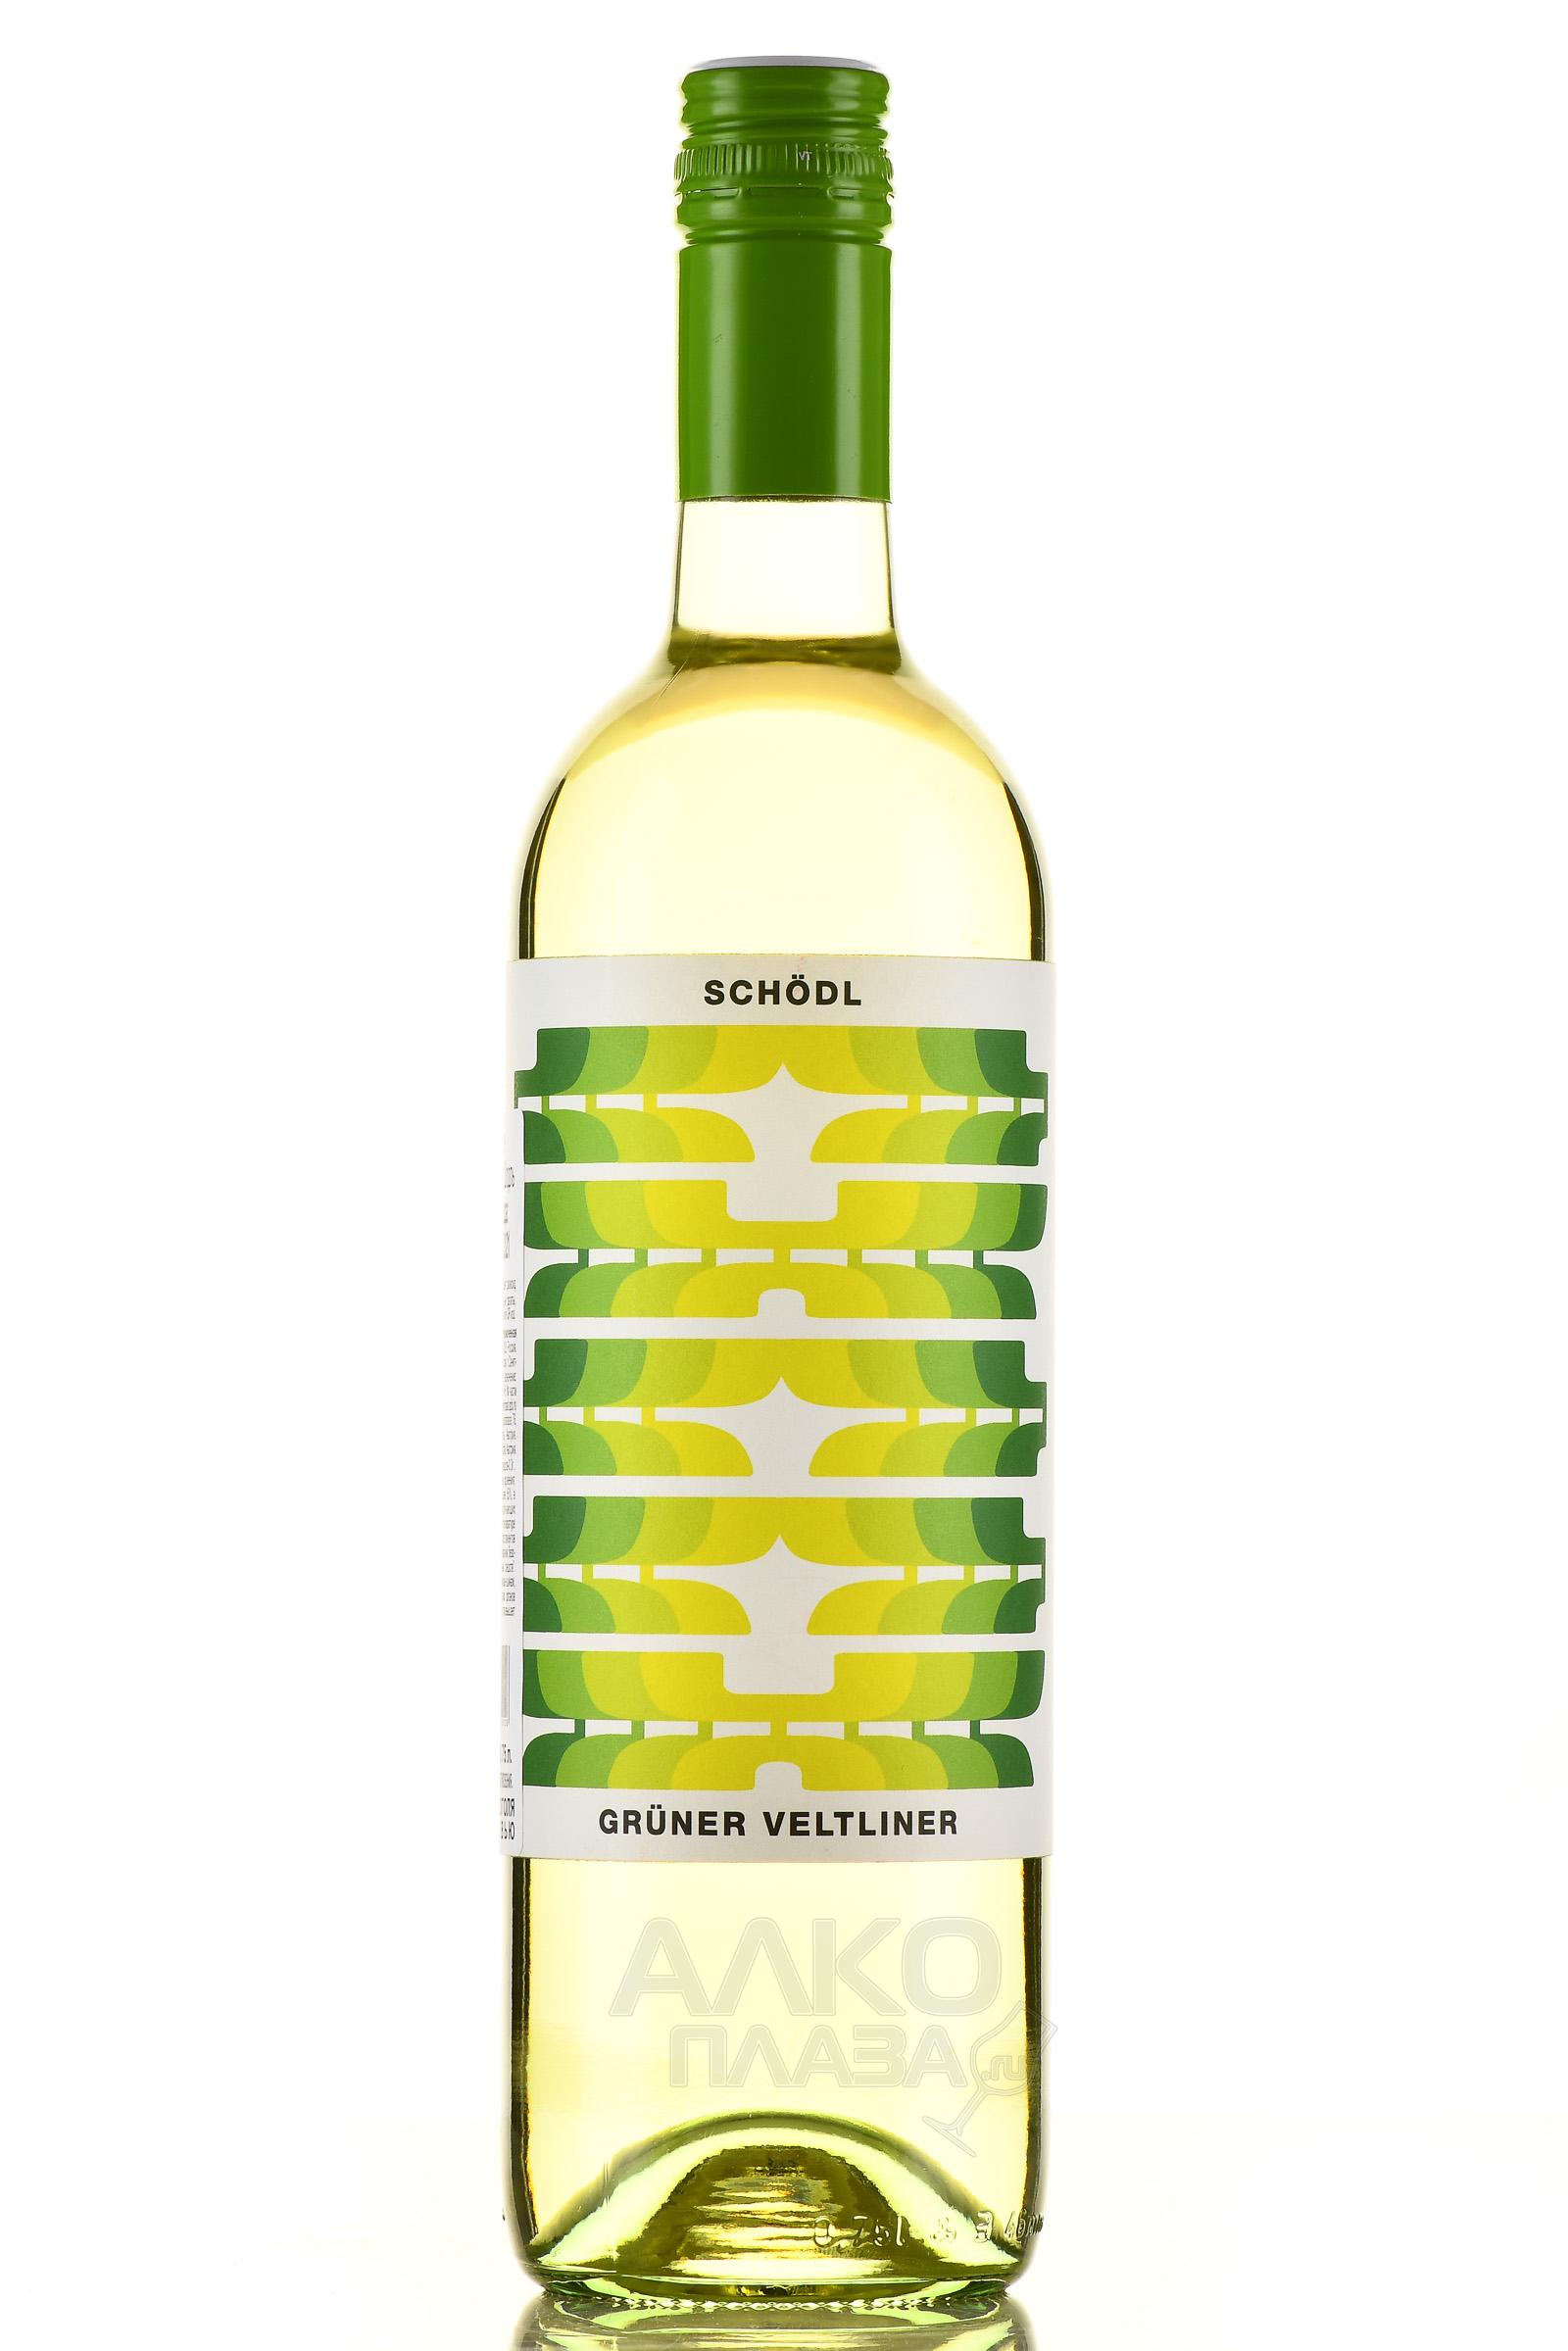 Gruner Veltliner Schodl - вино Грюнер Вельтлинер Шодль 0.75 л белое сухое